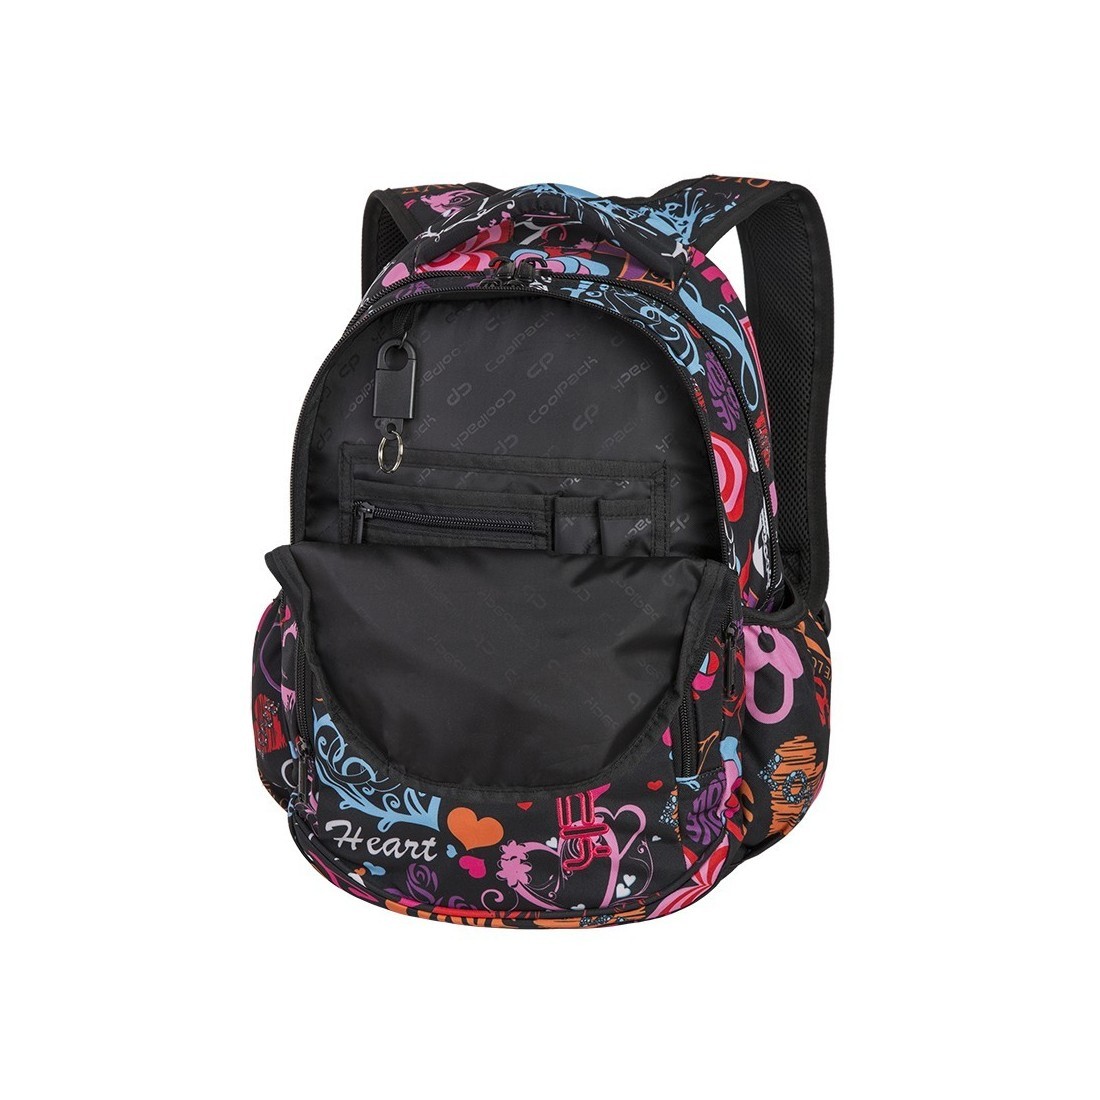 Plecak szkolny CoolPack CP Prime czarny w kolorowe serca dla dziewczynki - plecak-tornister.pl